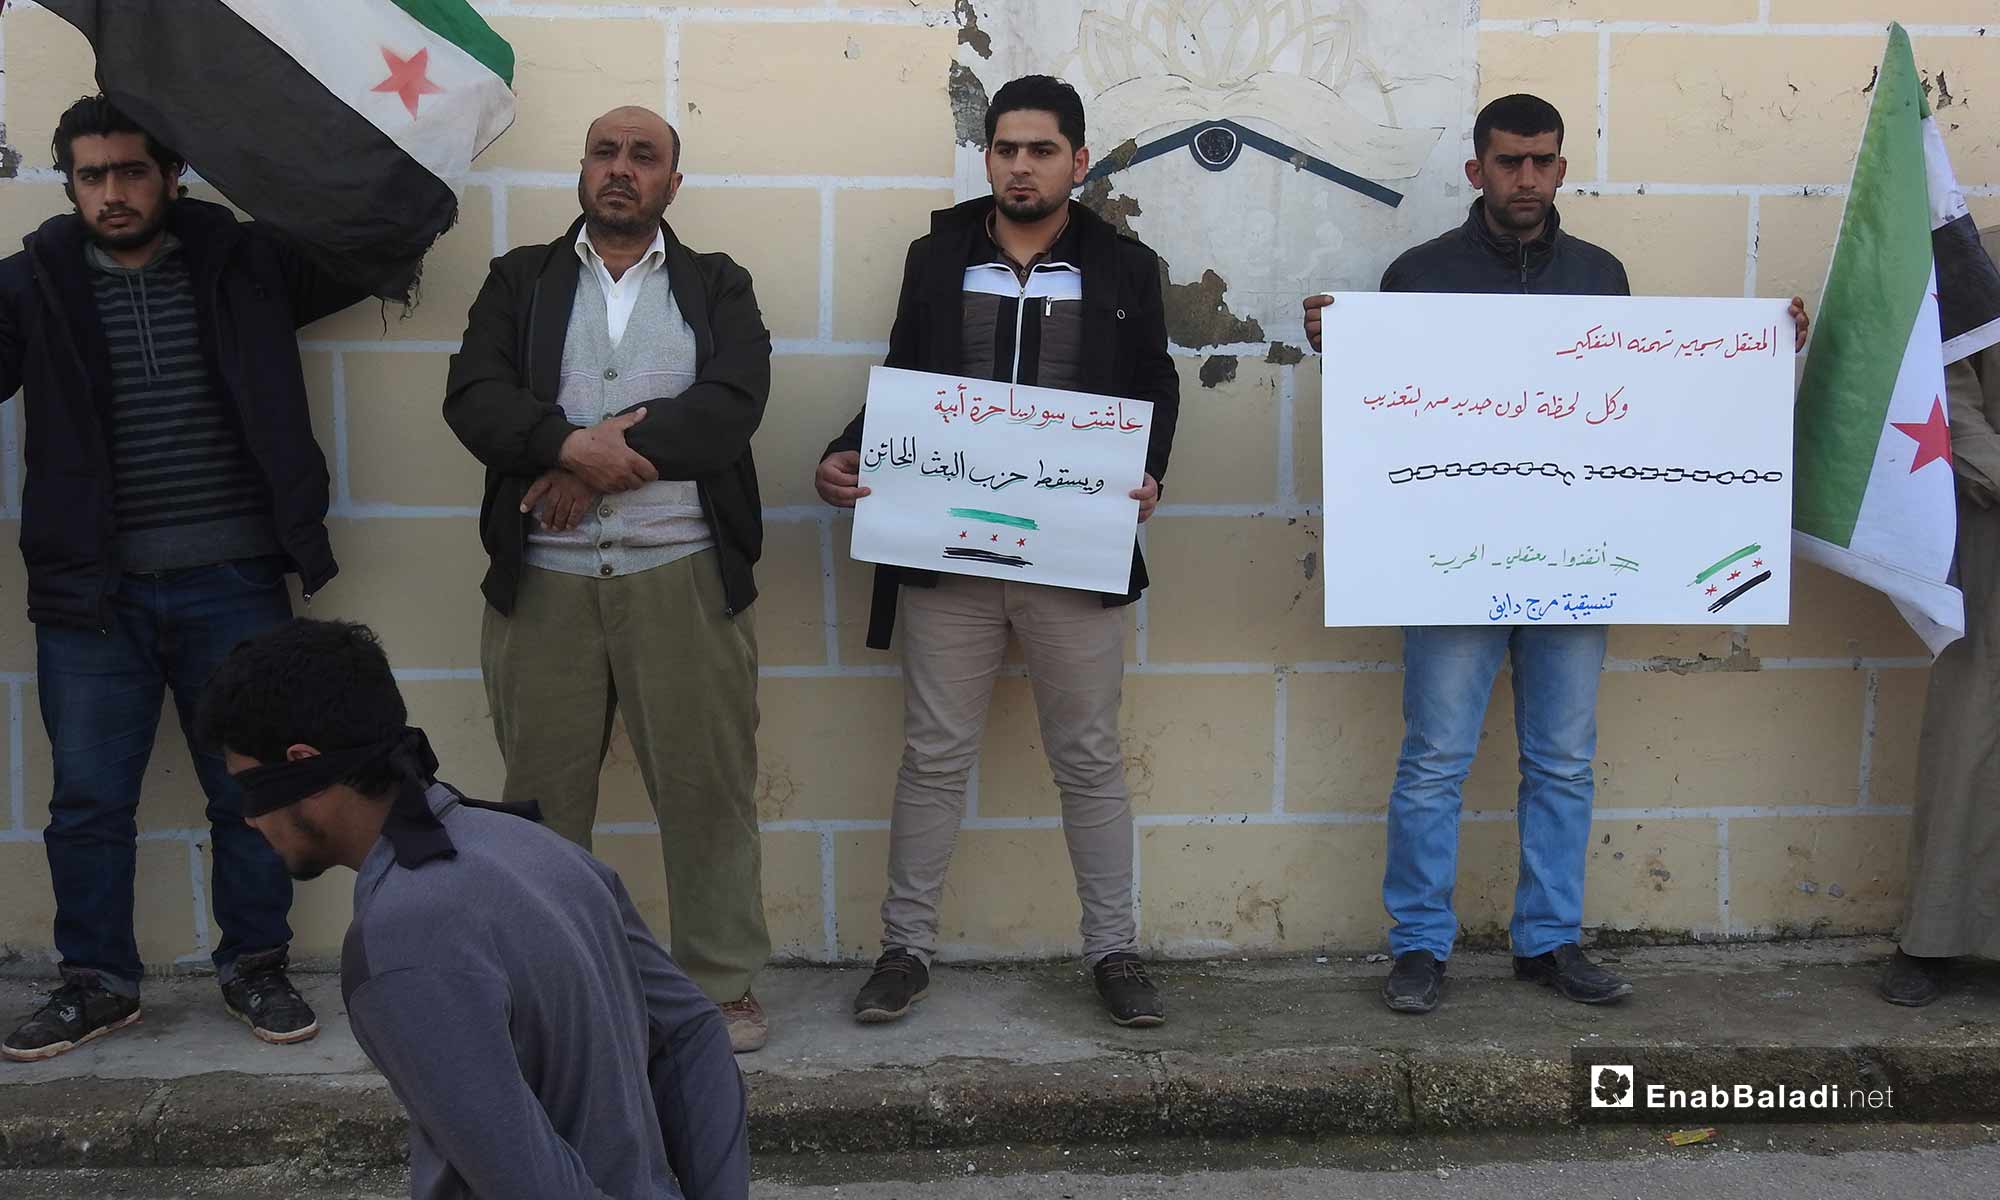 وقفة تضامنية مع المعتقلين في بلدة دابق بريف حلب الشمالي - 25 من شباط 2019 (عنب بلدي)